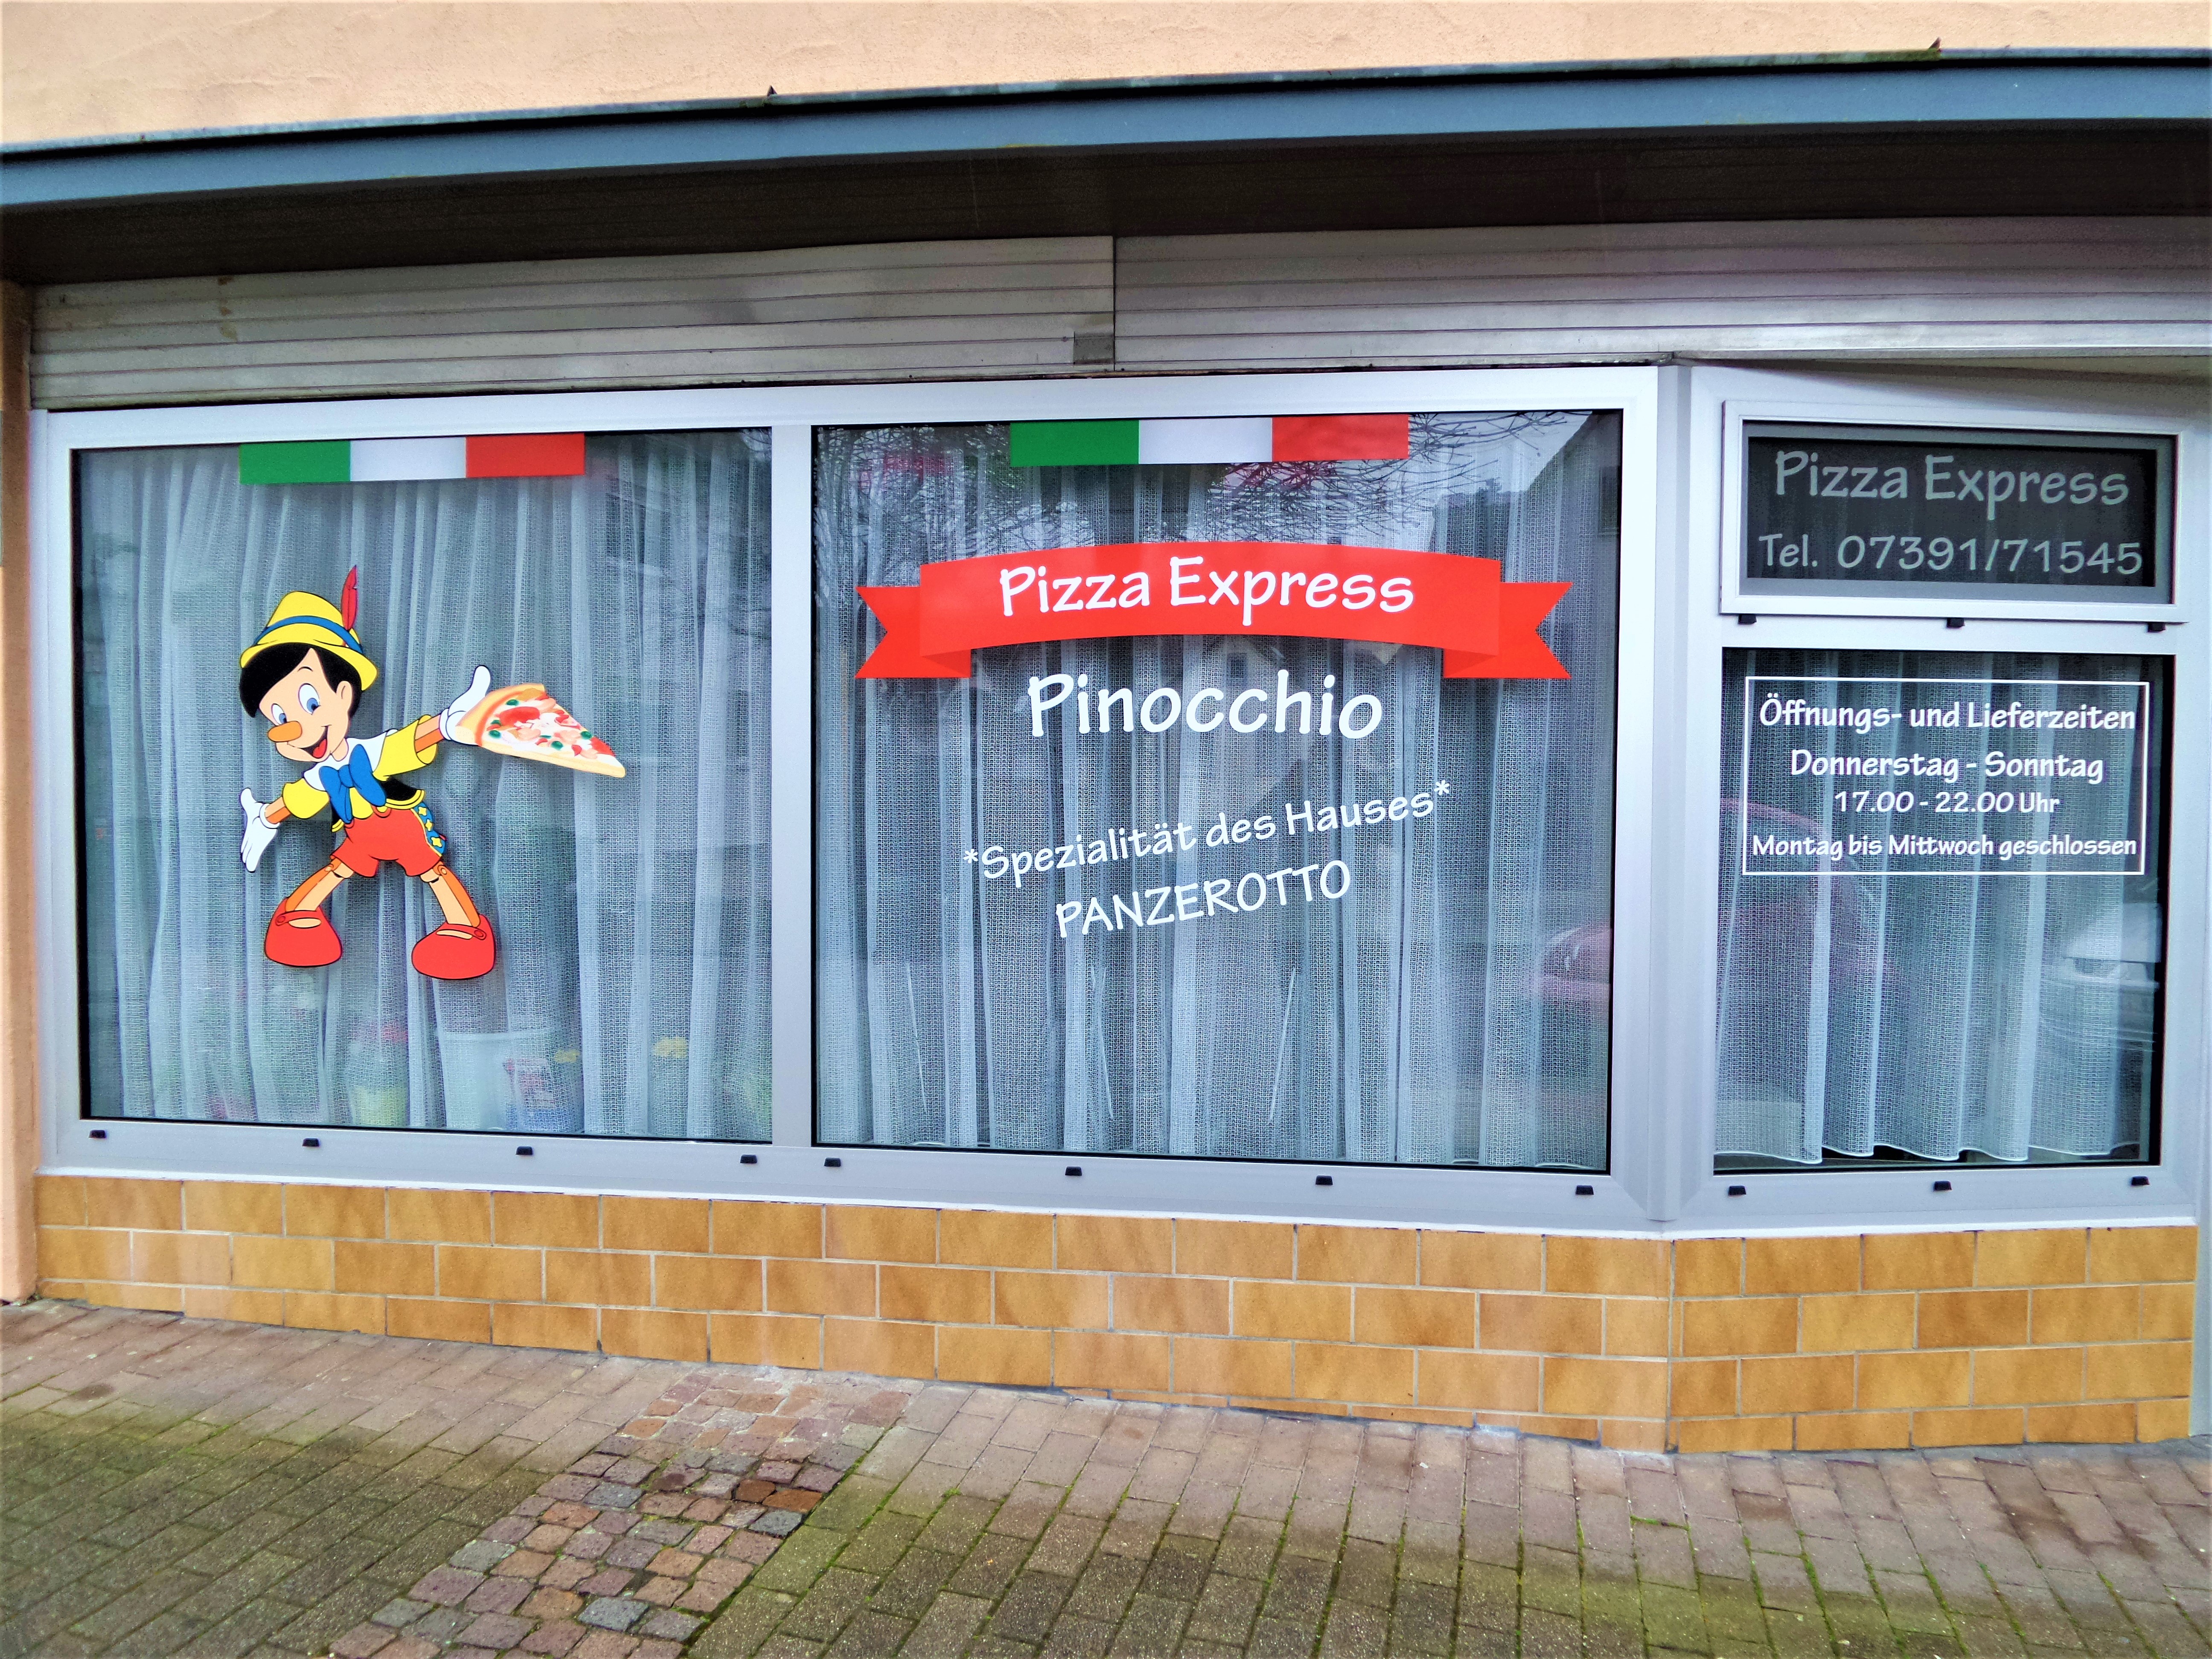 Pizza Express Pinocchio in Ehingen (Donau)